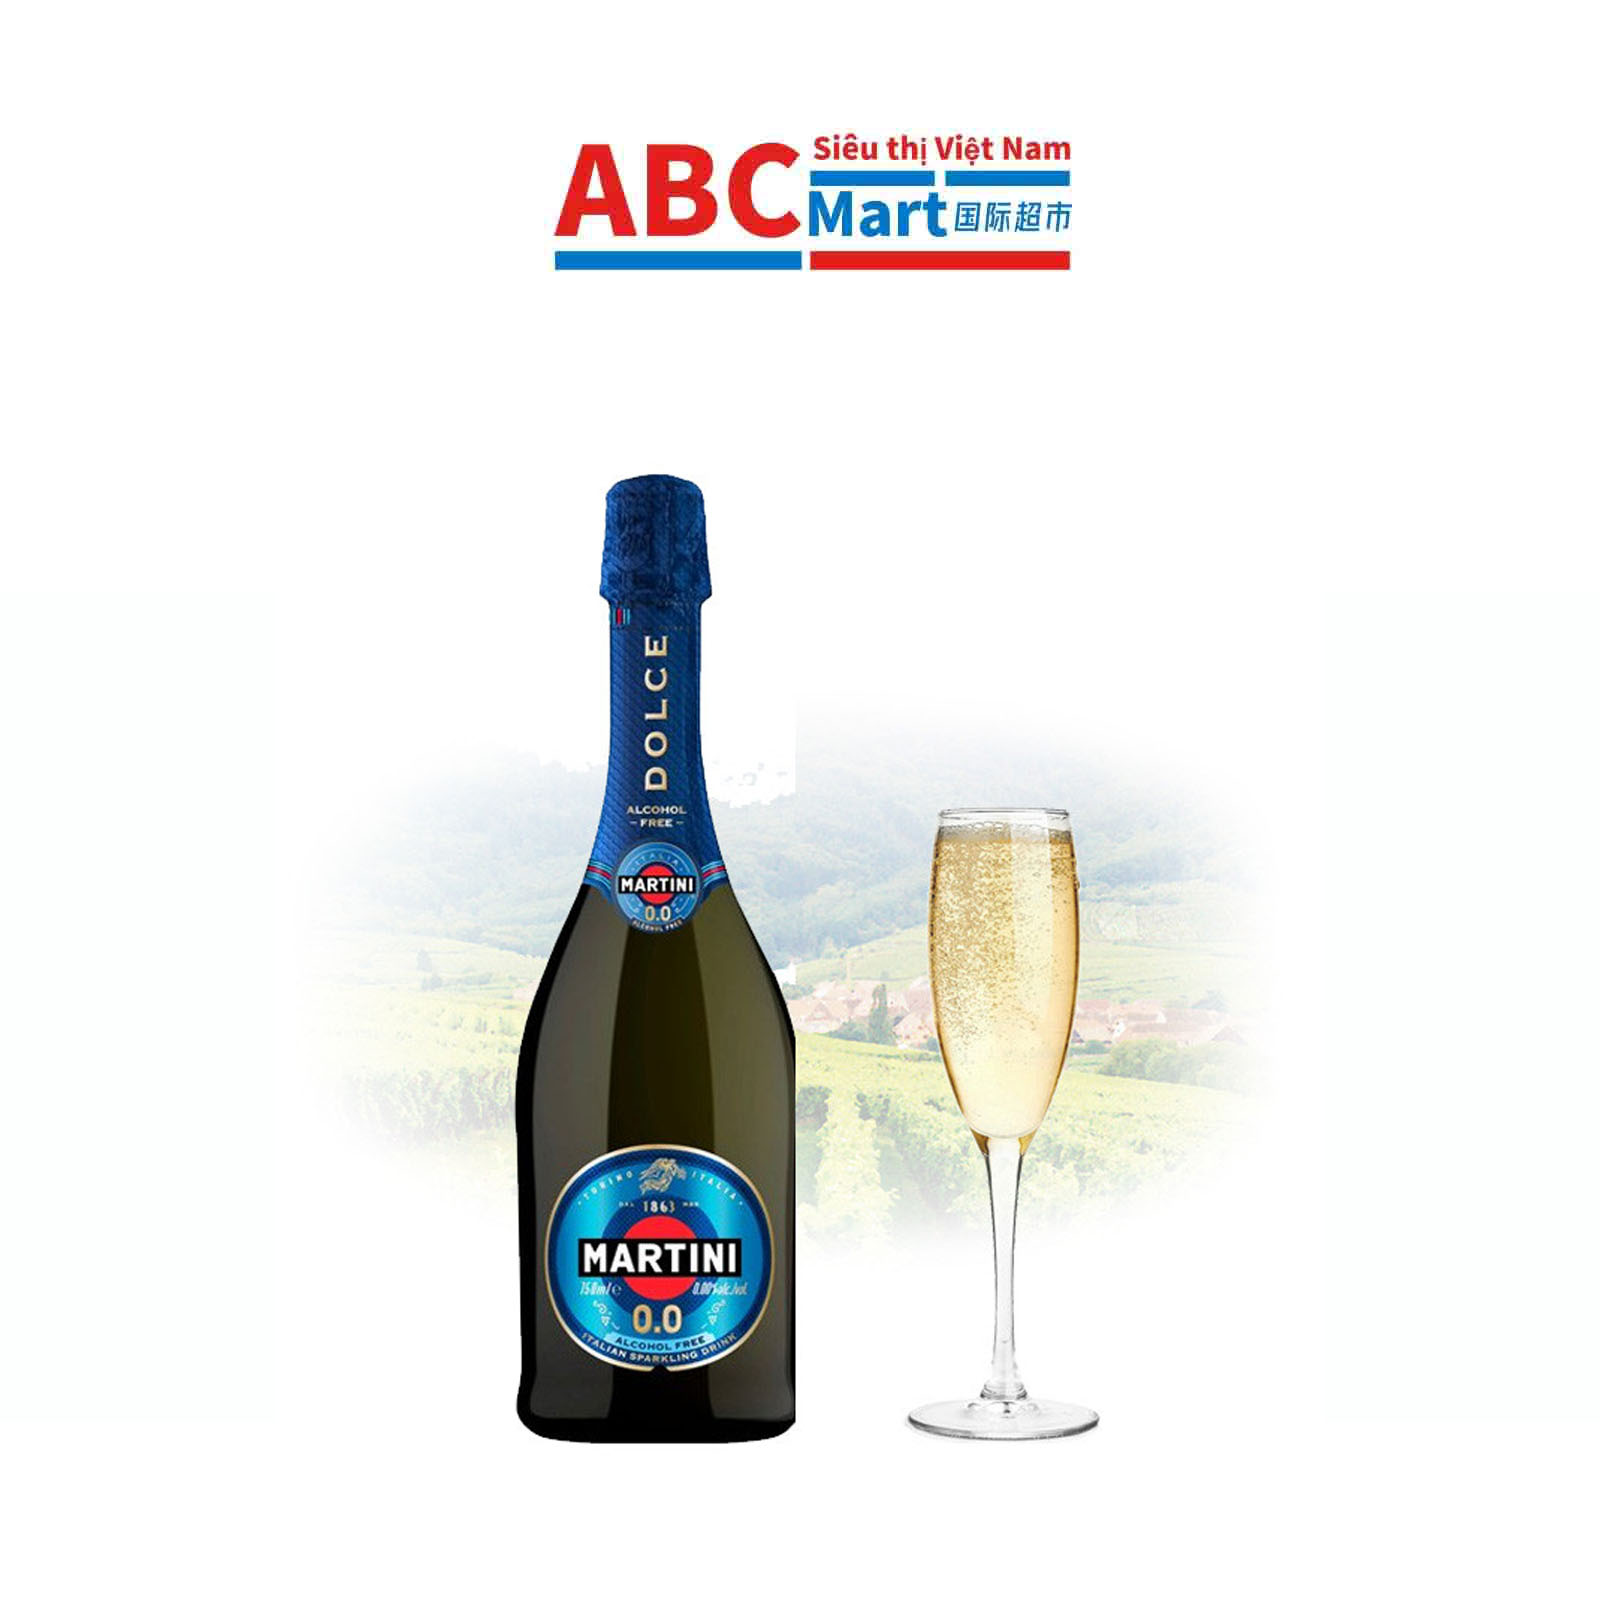 【意大利-MARTINI 马天尼甜起泡葡萄酒 750ml】起泡酒香槟酒鸡尾酒-ABCMart 国际超市